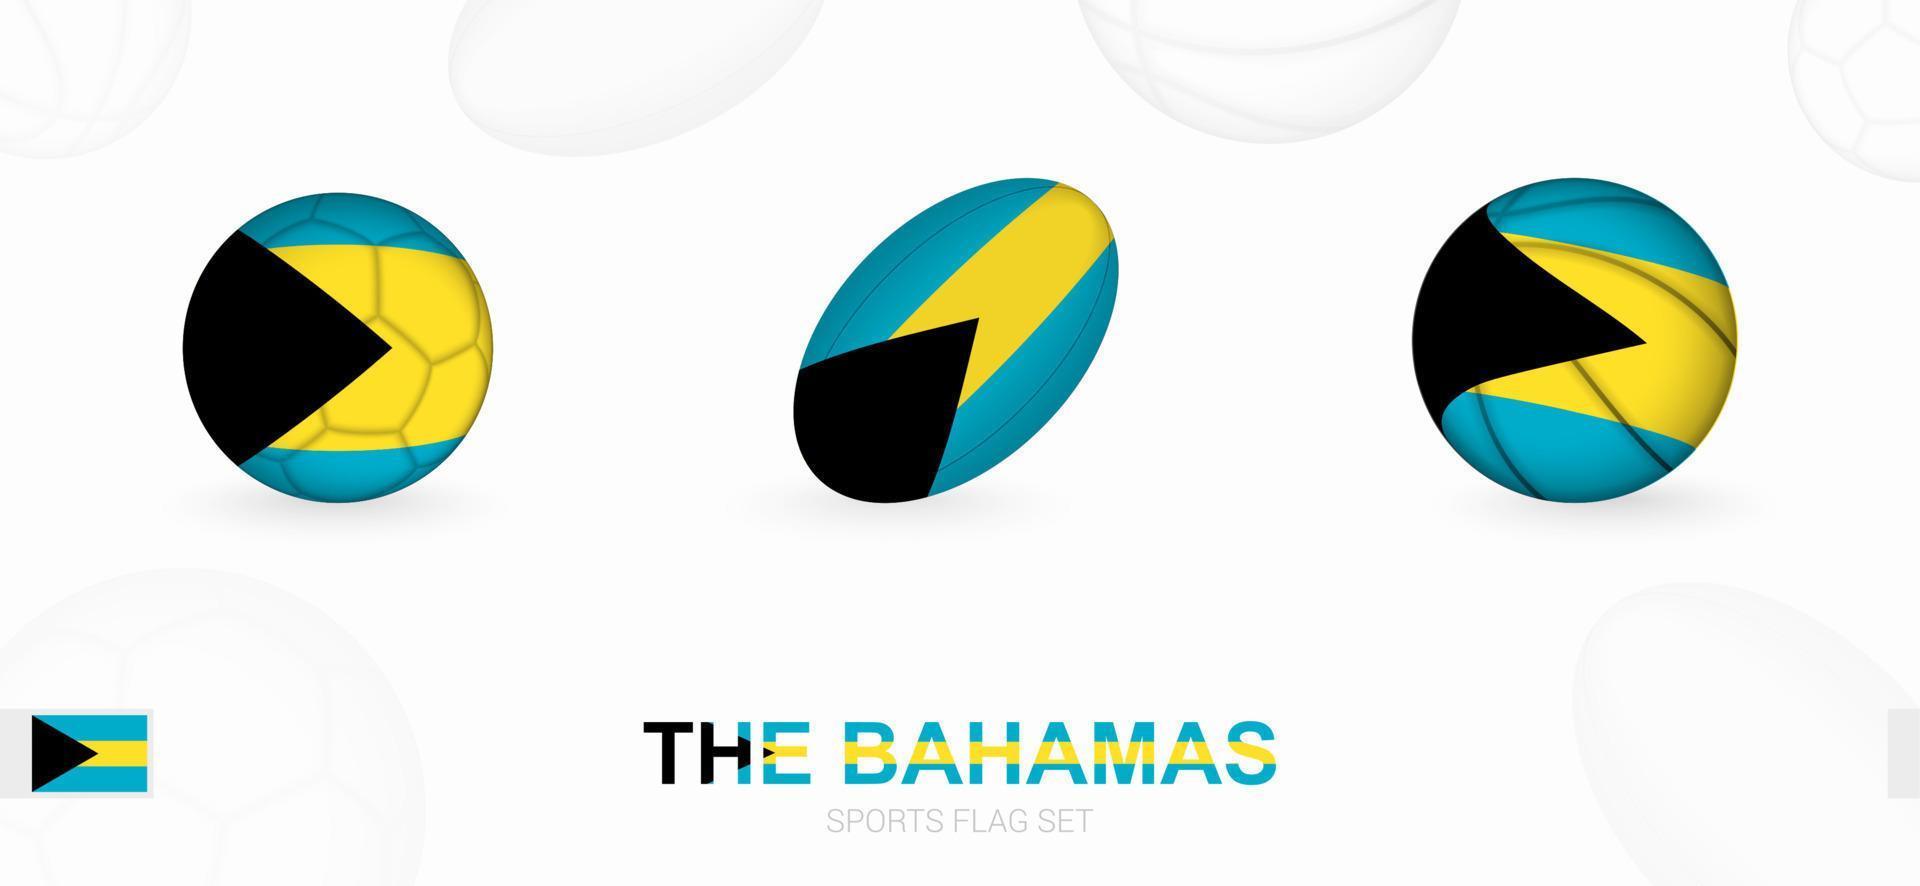 sporter ikoner för fotboll, rugby och basketboll med de flagga av de Bahamas. vektor